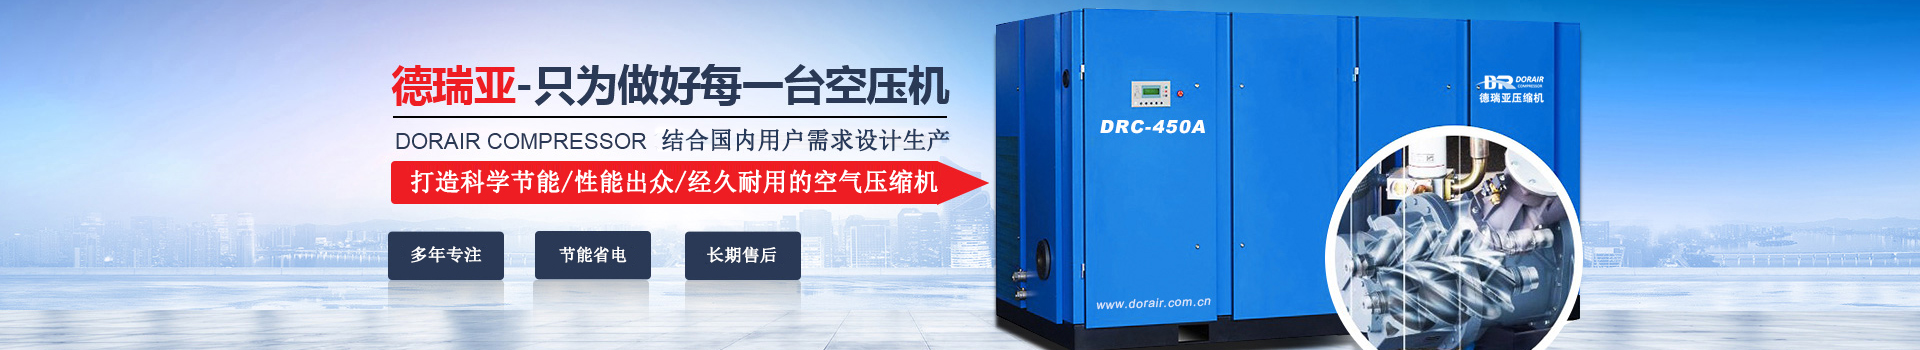 德瑞亞空壓機，中國高品質空壓機倡導者